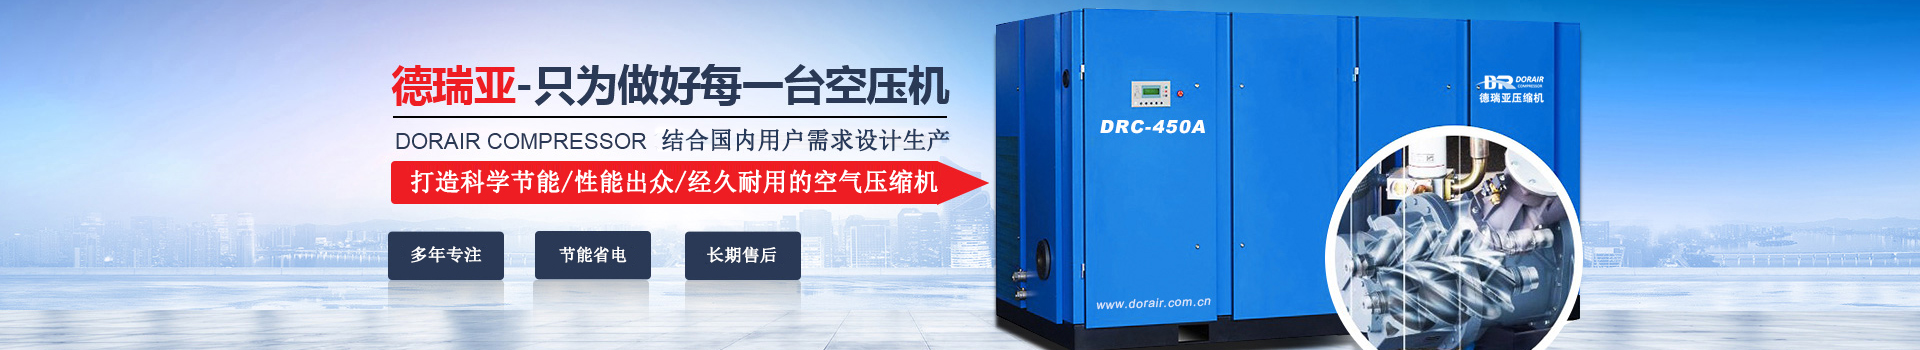 德瑞亞空壓機，中國高品質空壓機倡導者